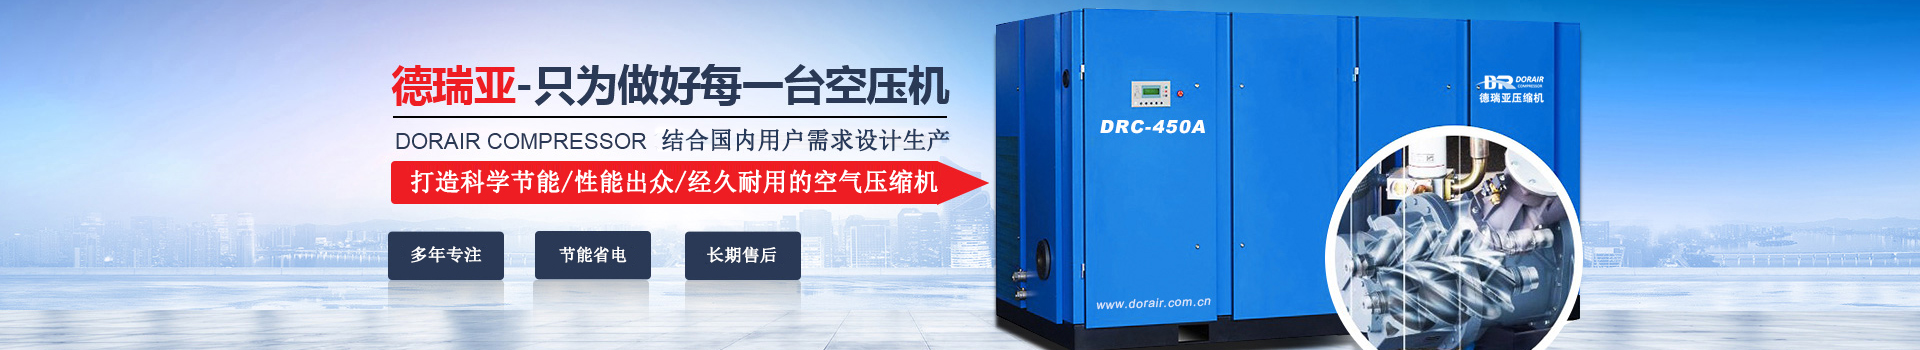 德瑞亞空壓機，中國高品質空壓機倡導者